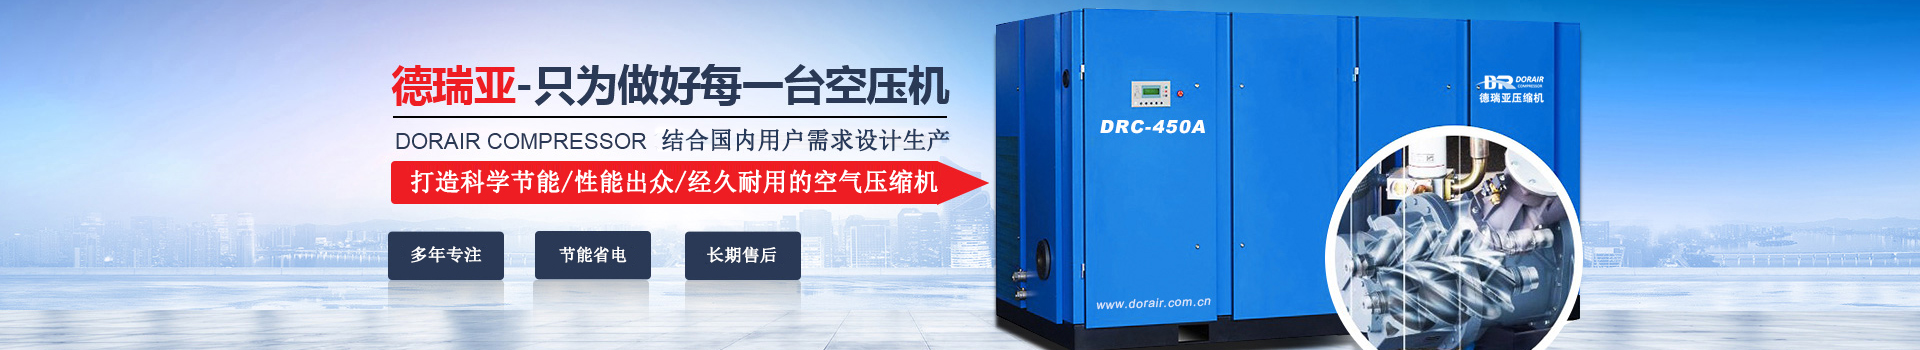 德瑞亞空壓機，中國高品質空壓機倡導者